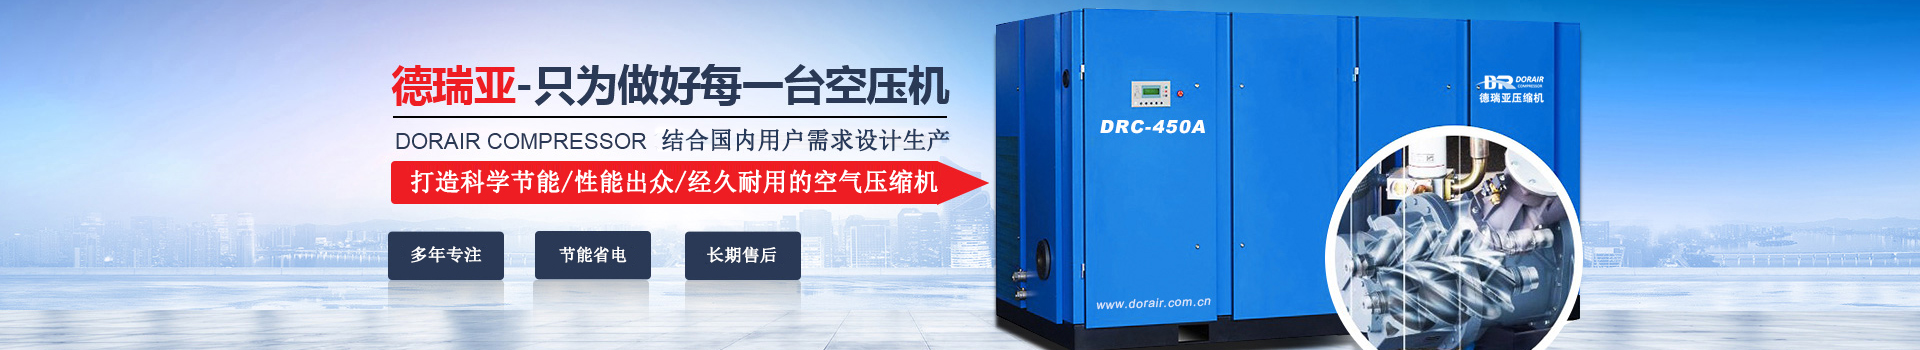 德瑞亞空壓機，中國高品質空壓機倡導者